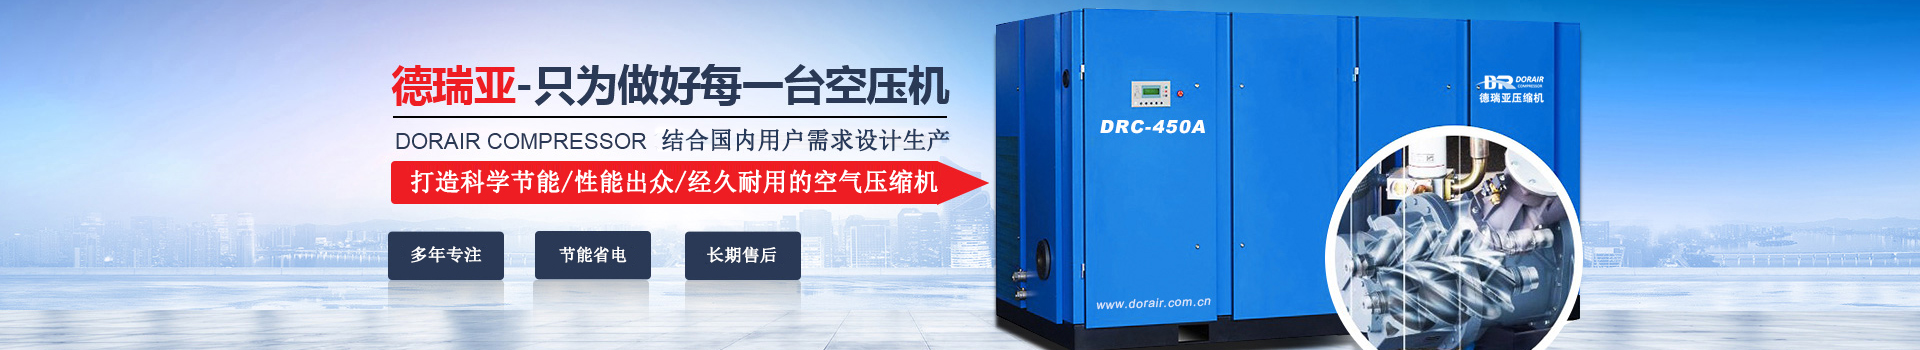 德瑞亞空壓機，中國高品質空壓機倡導者